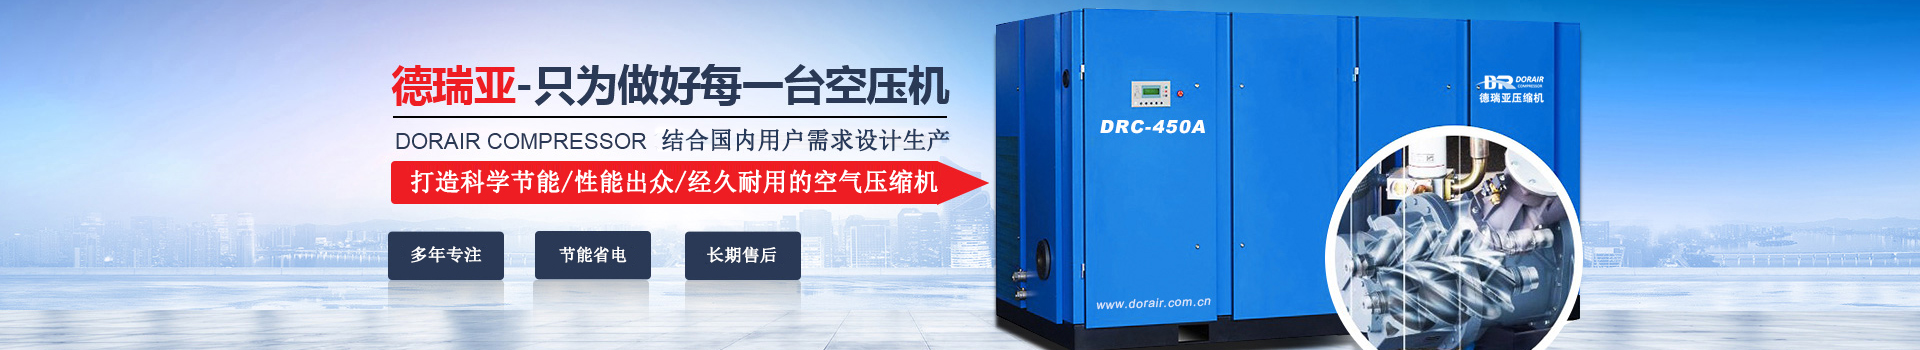 德瑞亞空壓機，中國高品質空壓機倡導者